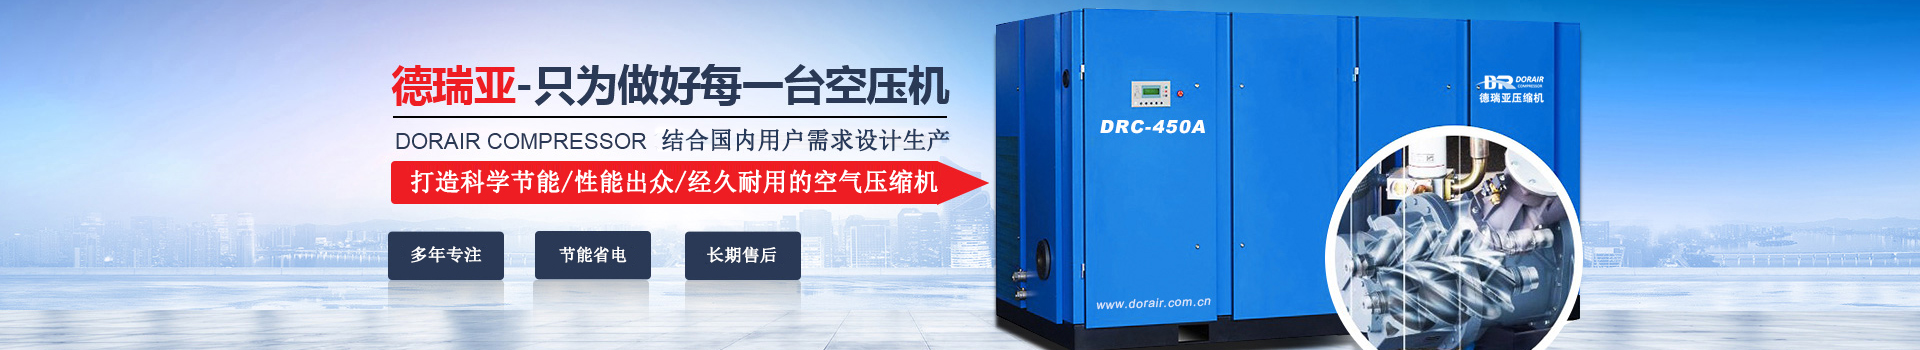 德瑞亞空壓機，中國高品質空壓機倡導者